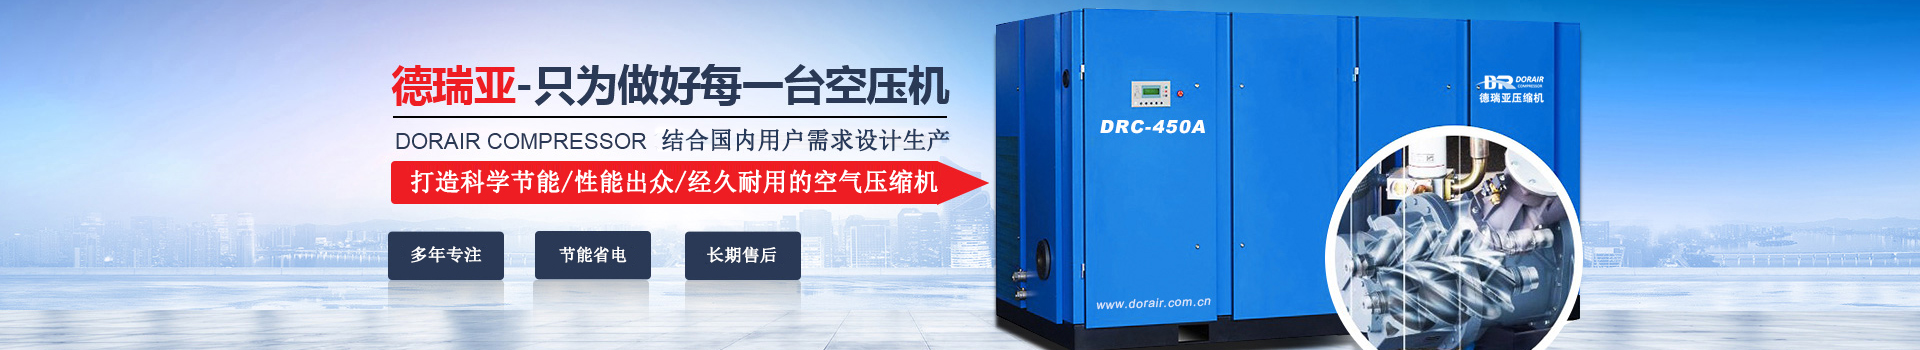 德瑞亞空壓機，中國高品質空壓機倡導者